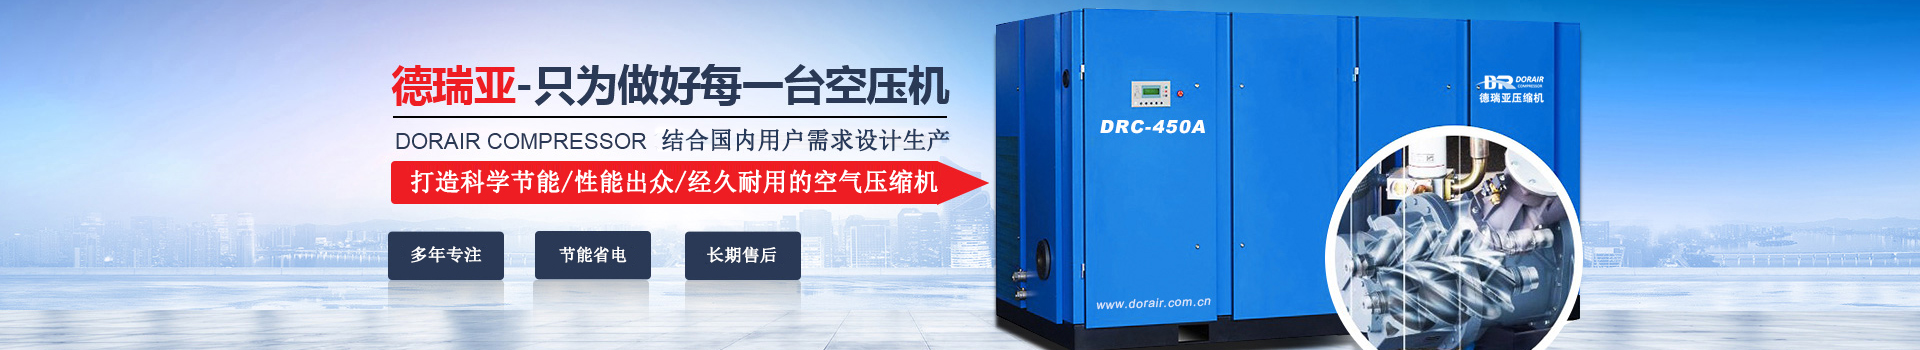 德瑞亞空壓機，中國高品質空壓機倡導者